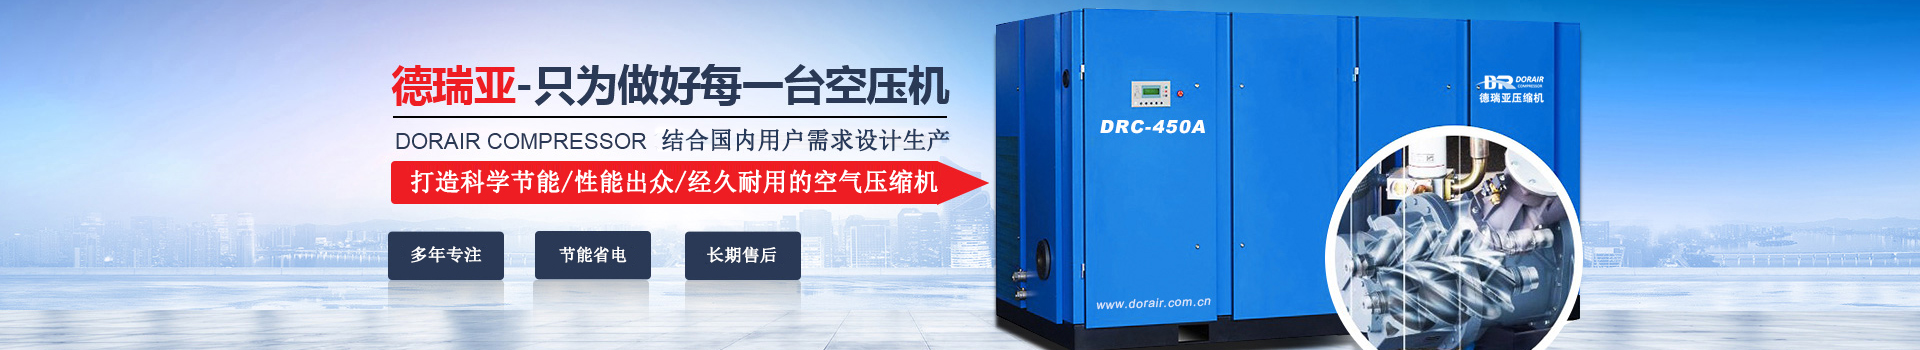 德瑞亞空壓機，中國高品質空壓機倡導者